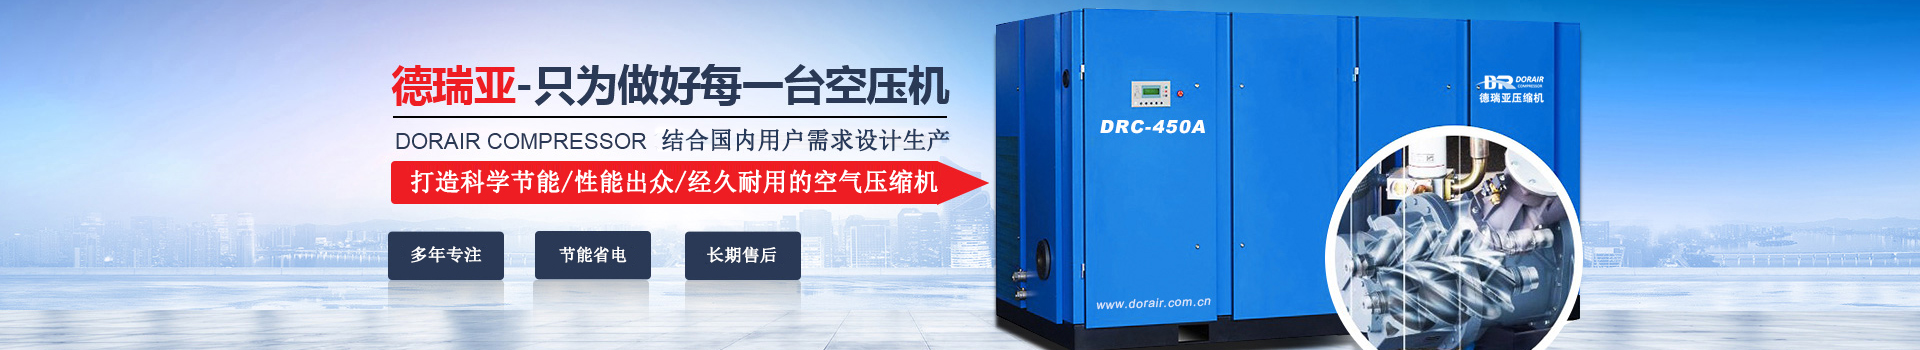 德瑞亞空壓機，中國高品質空壓機倡導者